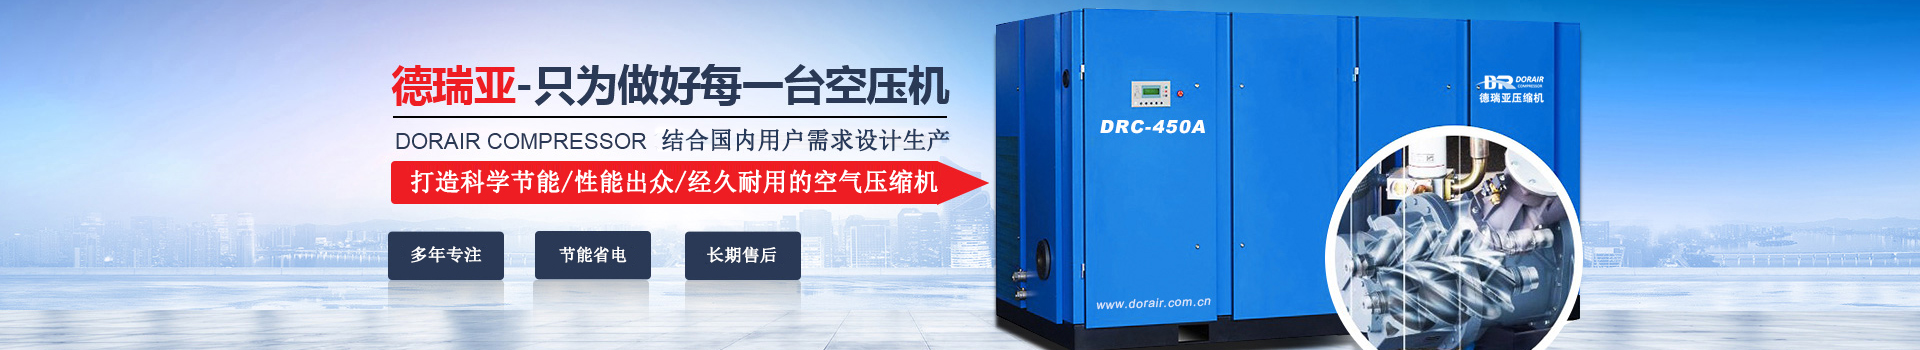 德瑞亞空壓機，中國高品質空壓機倡導者